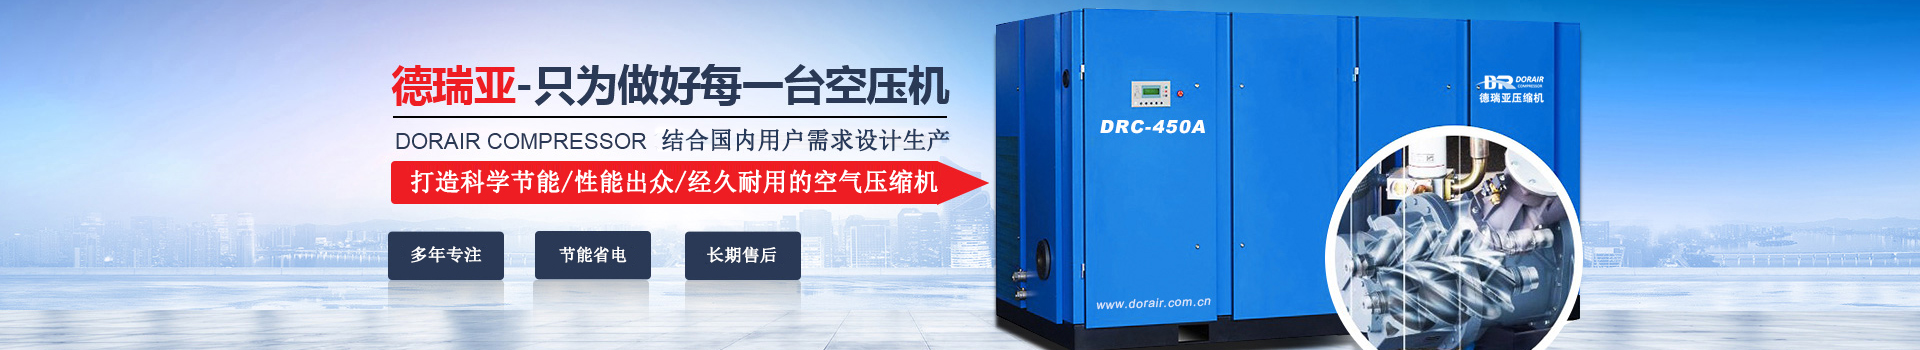 德瑞亞空壓機，中國高品質空壓機倡導者